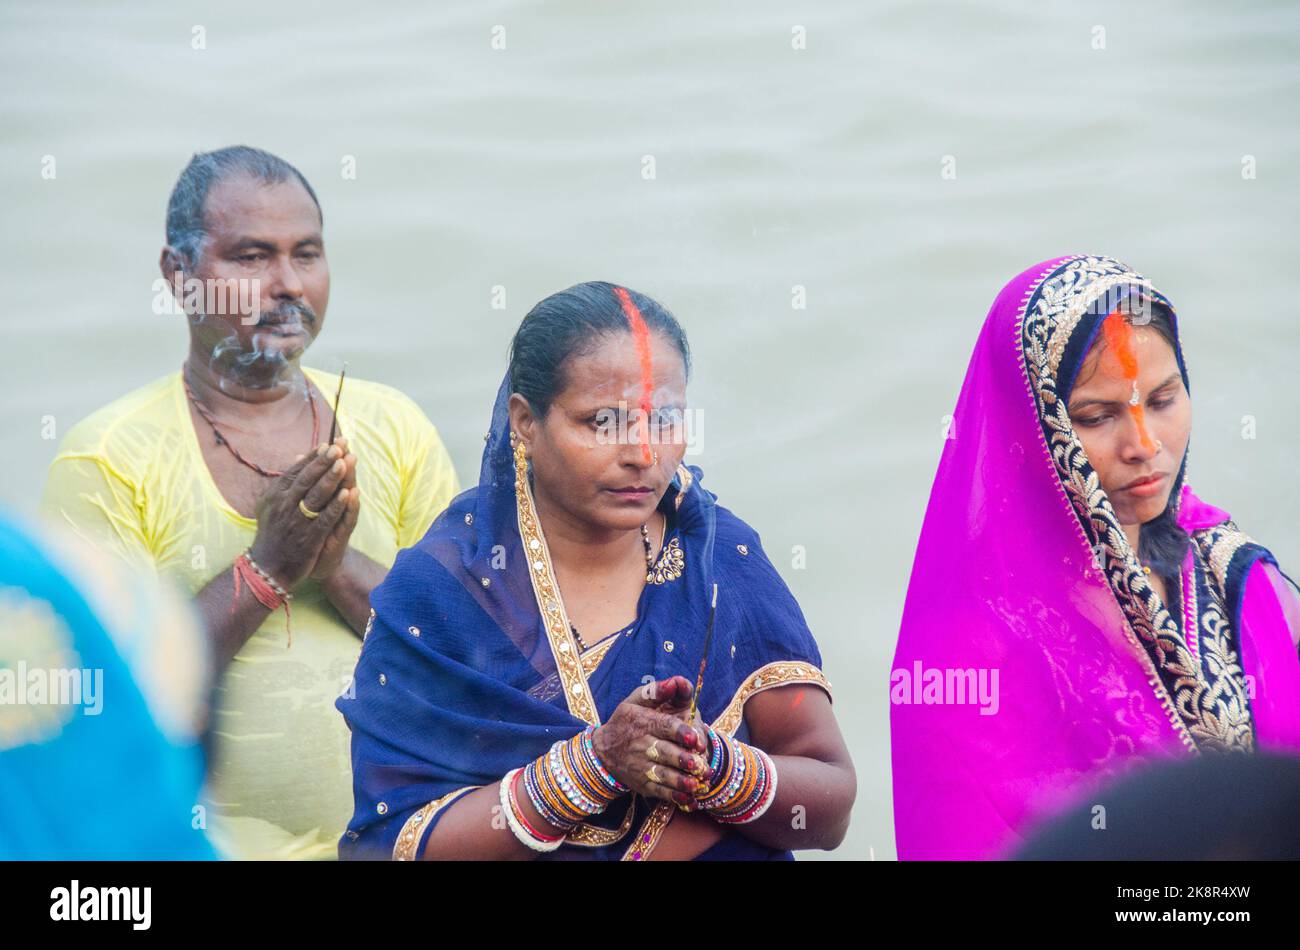 Uomini e donne indiane non identificati pregano e dedicano per il Chhath Puja festival sul lato del fiume Ganges a Varanasi, India. Foto Stock